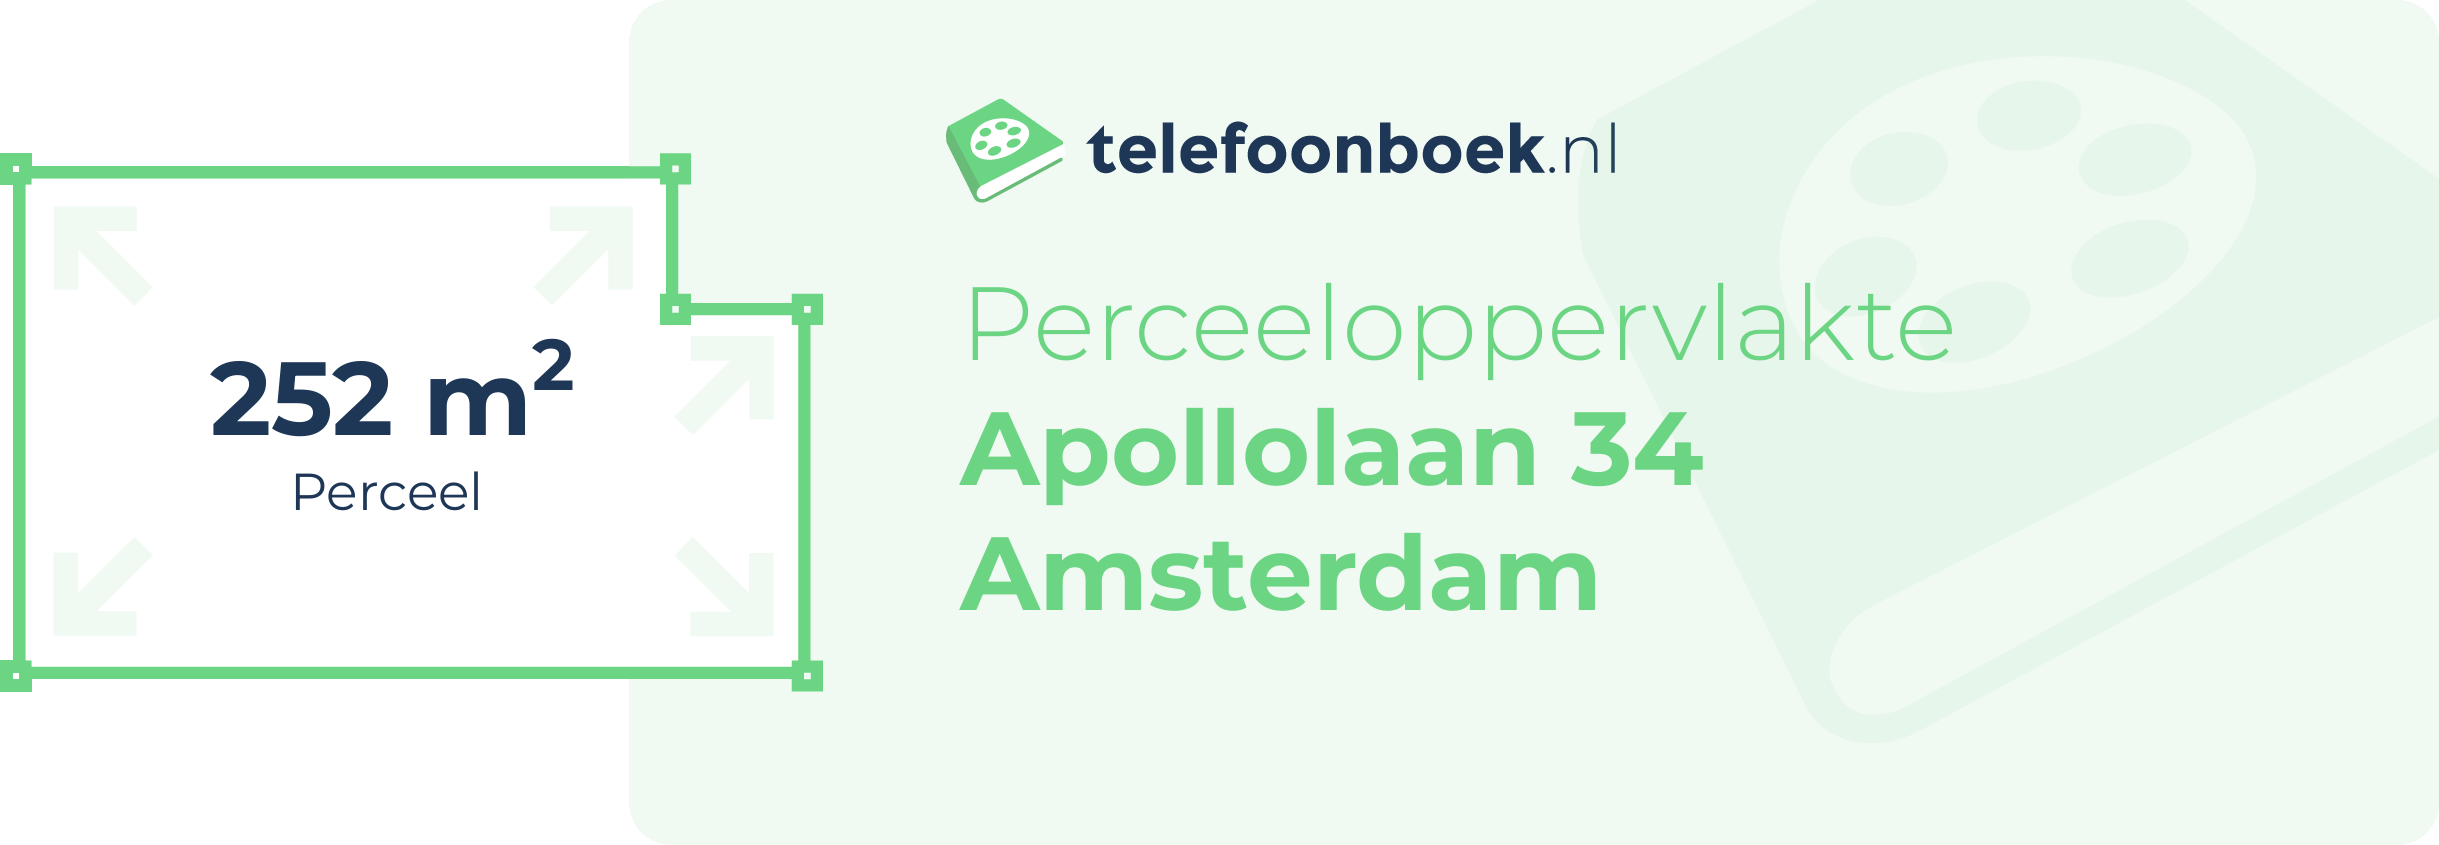 Perceeloppervlakte Apollolaan 34 Amsterdam